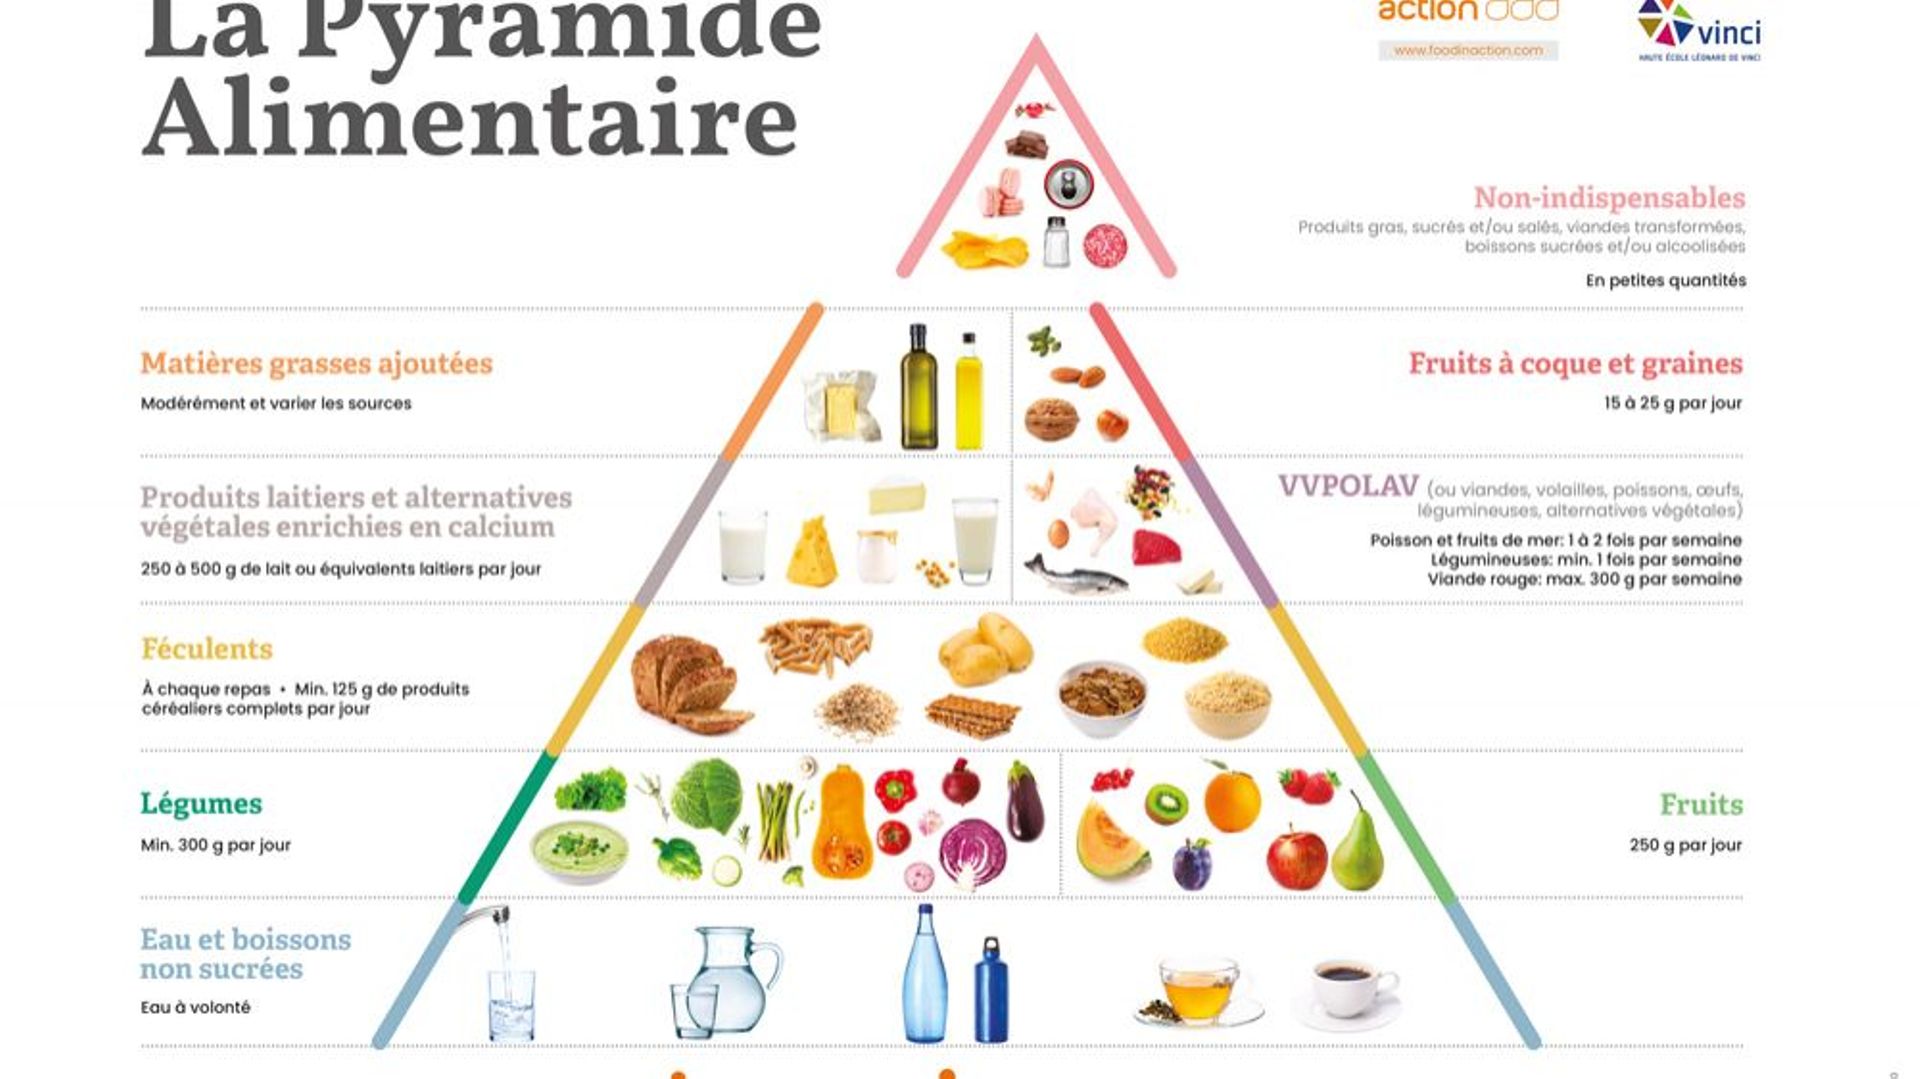 Reliftée, la pyramide alimentaire devient écolo